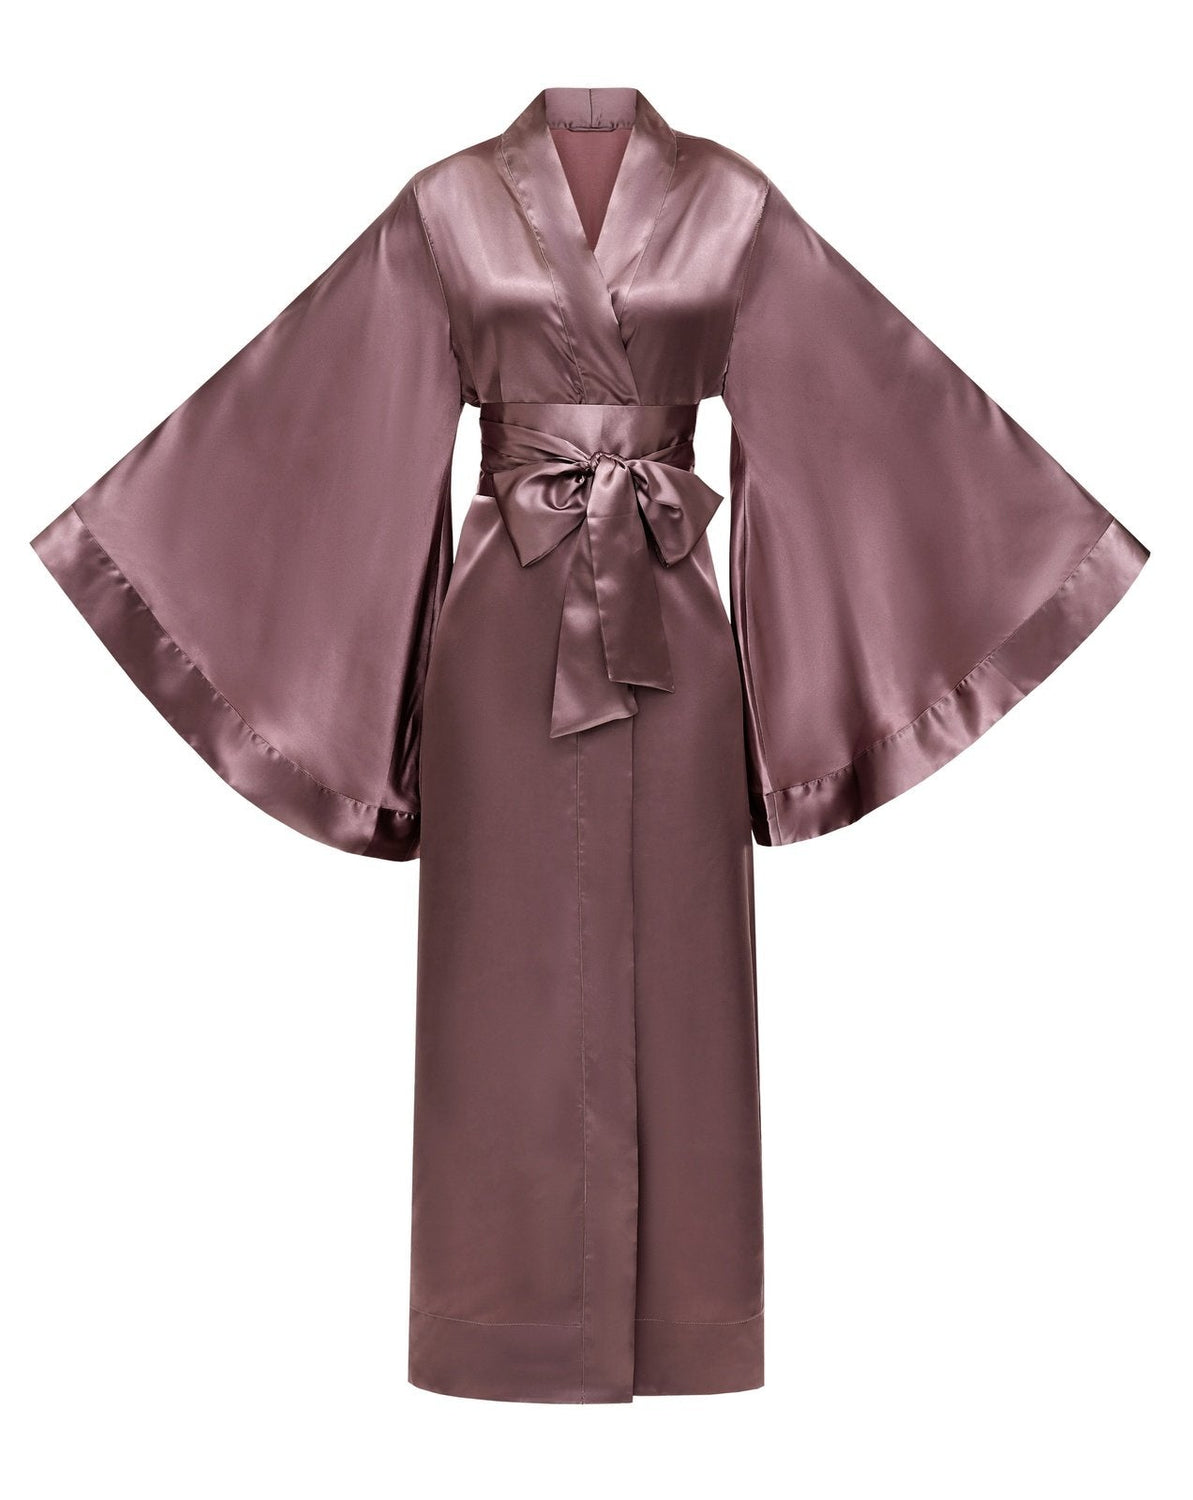 Long Satin Kimono Robe|Silk – Robes Kimono Robe|Luxury KÂfemme